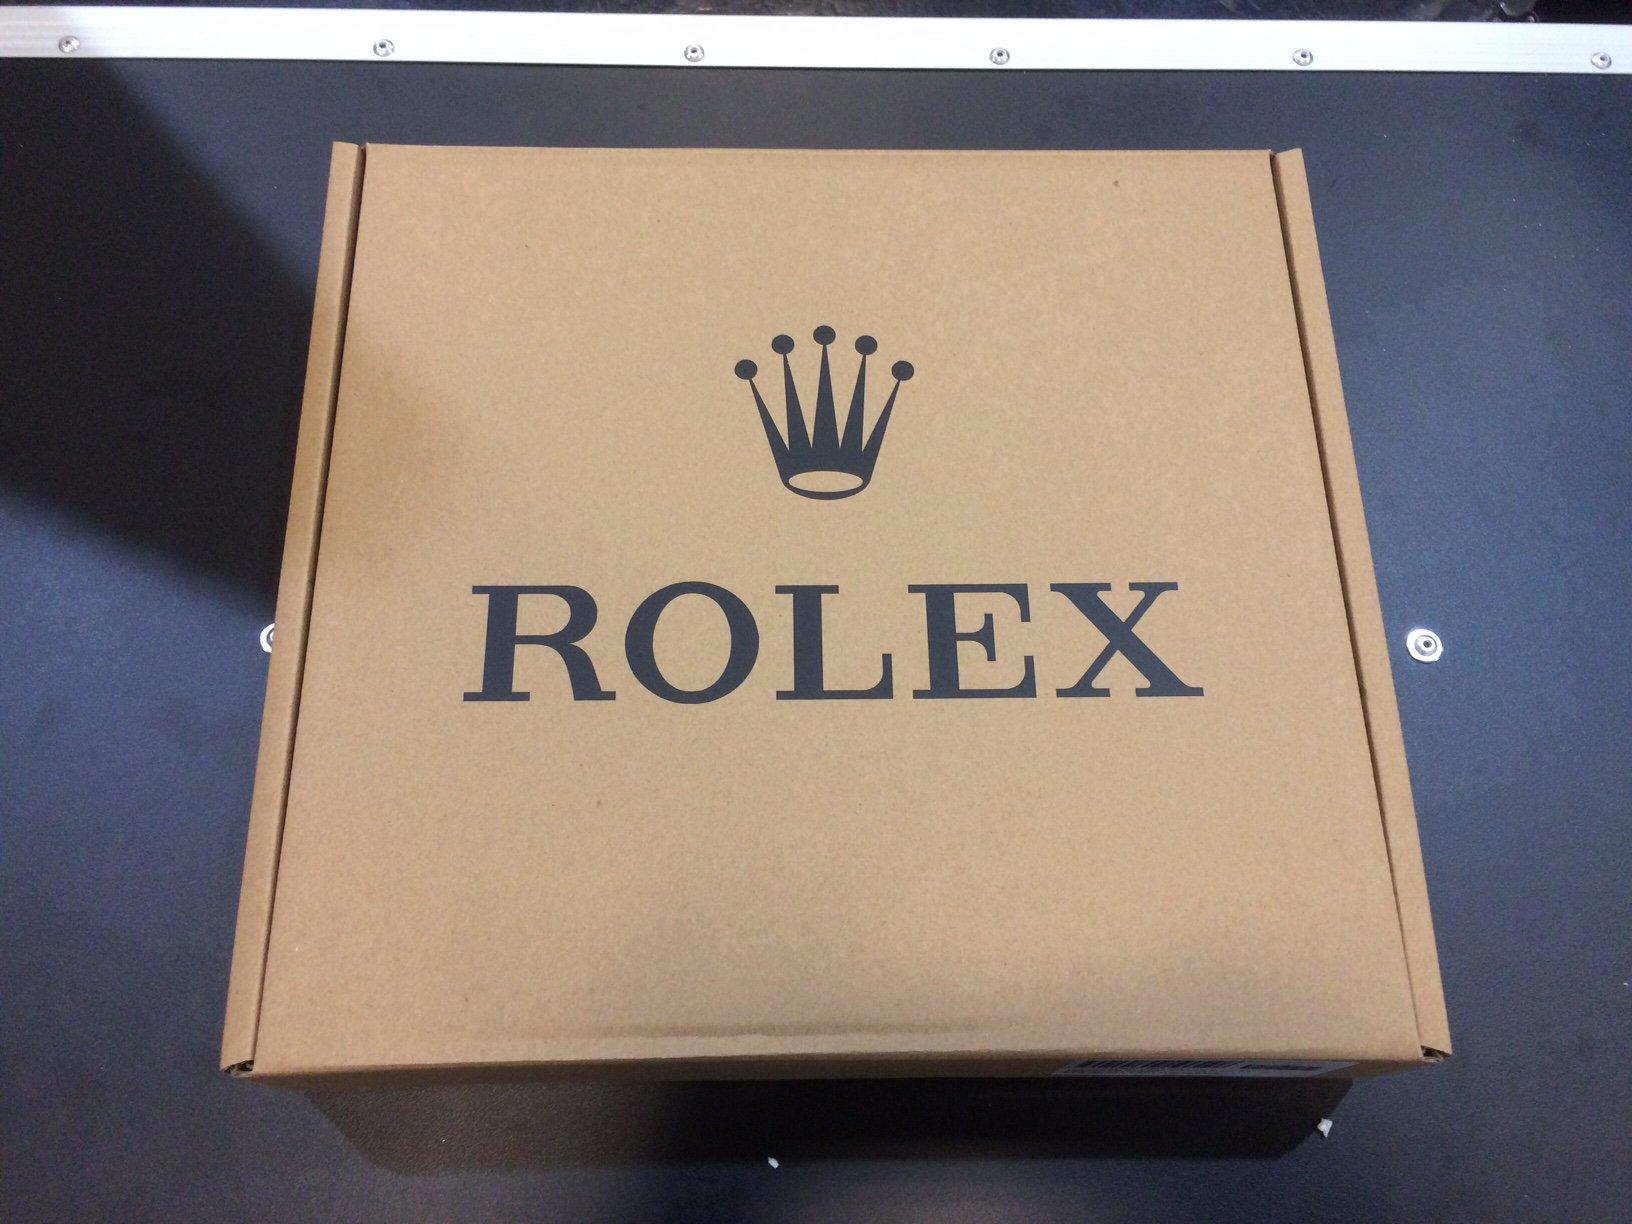 Rolex Händlerwanduhr